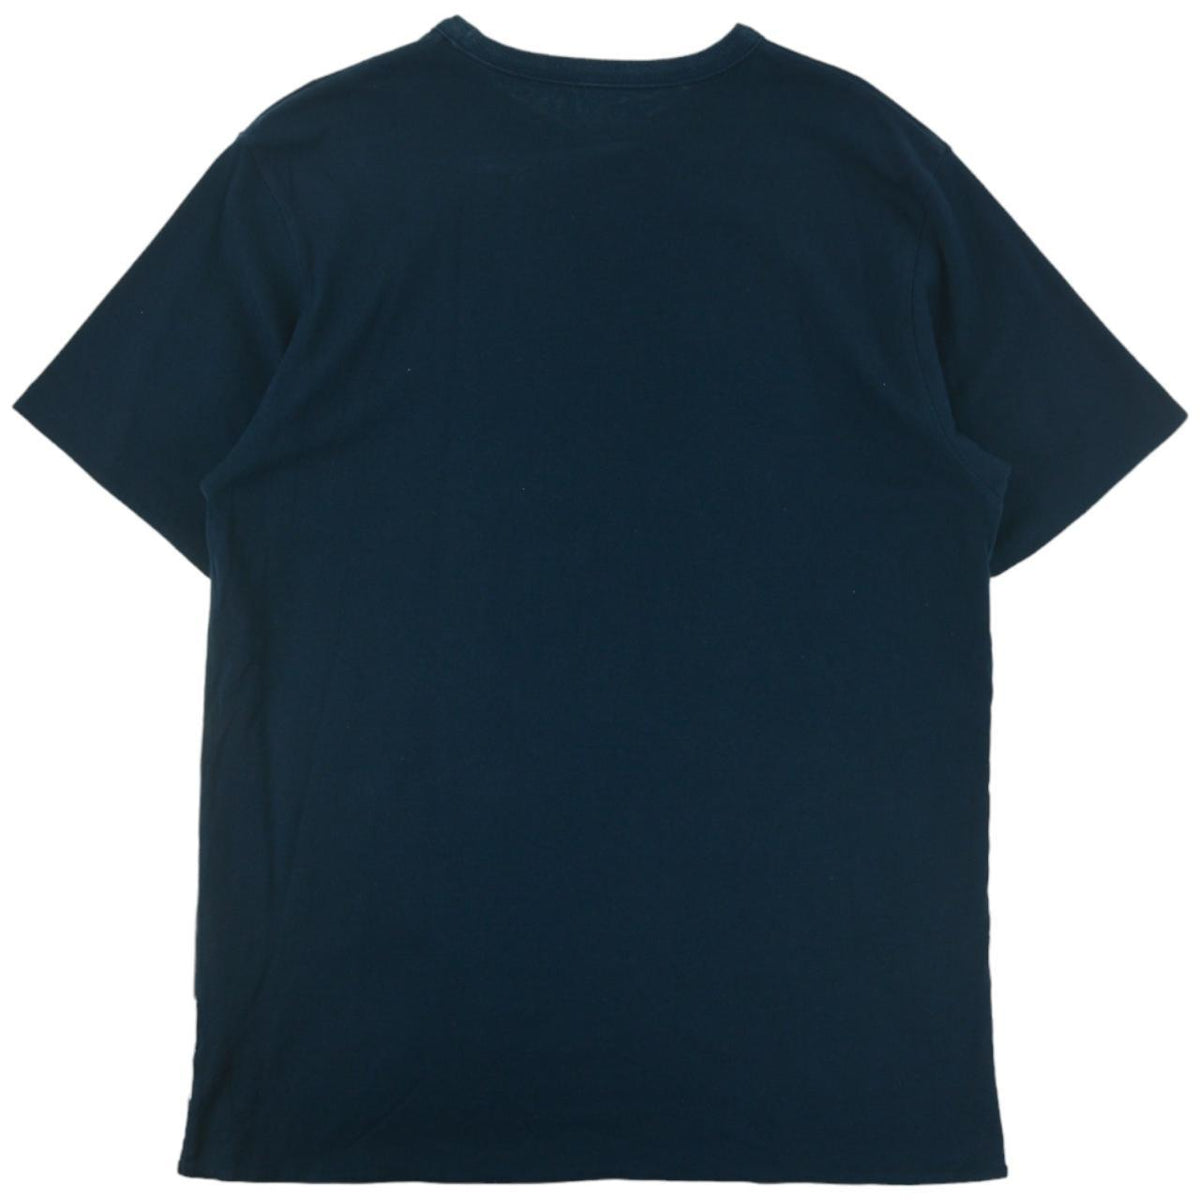 Vintage BAPE Reversible T Shirt Size M